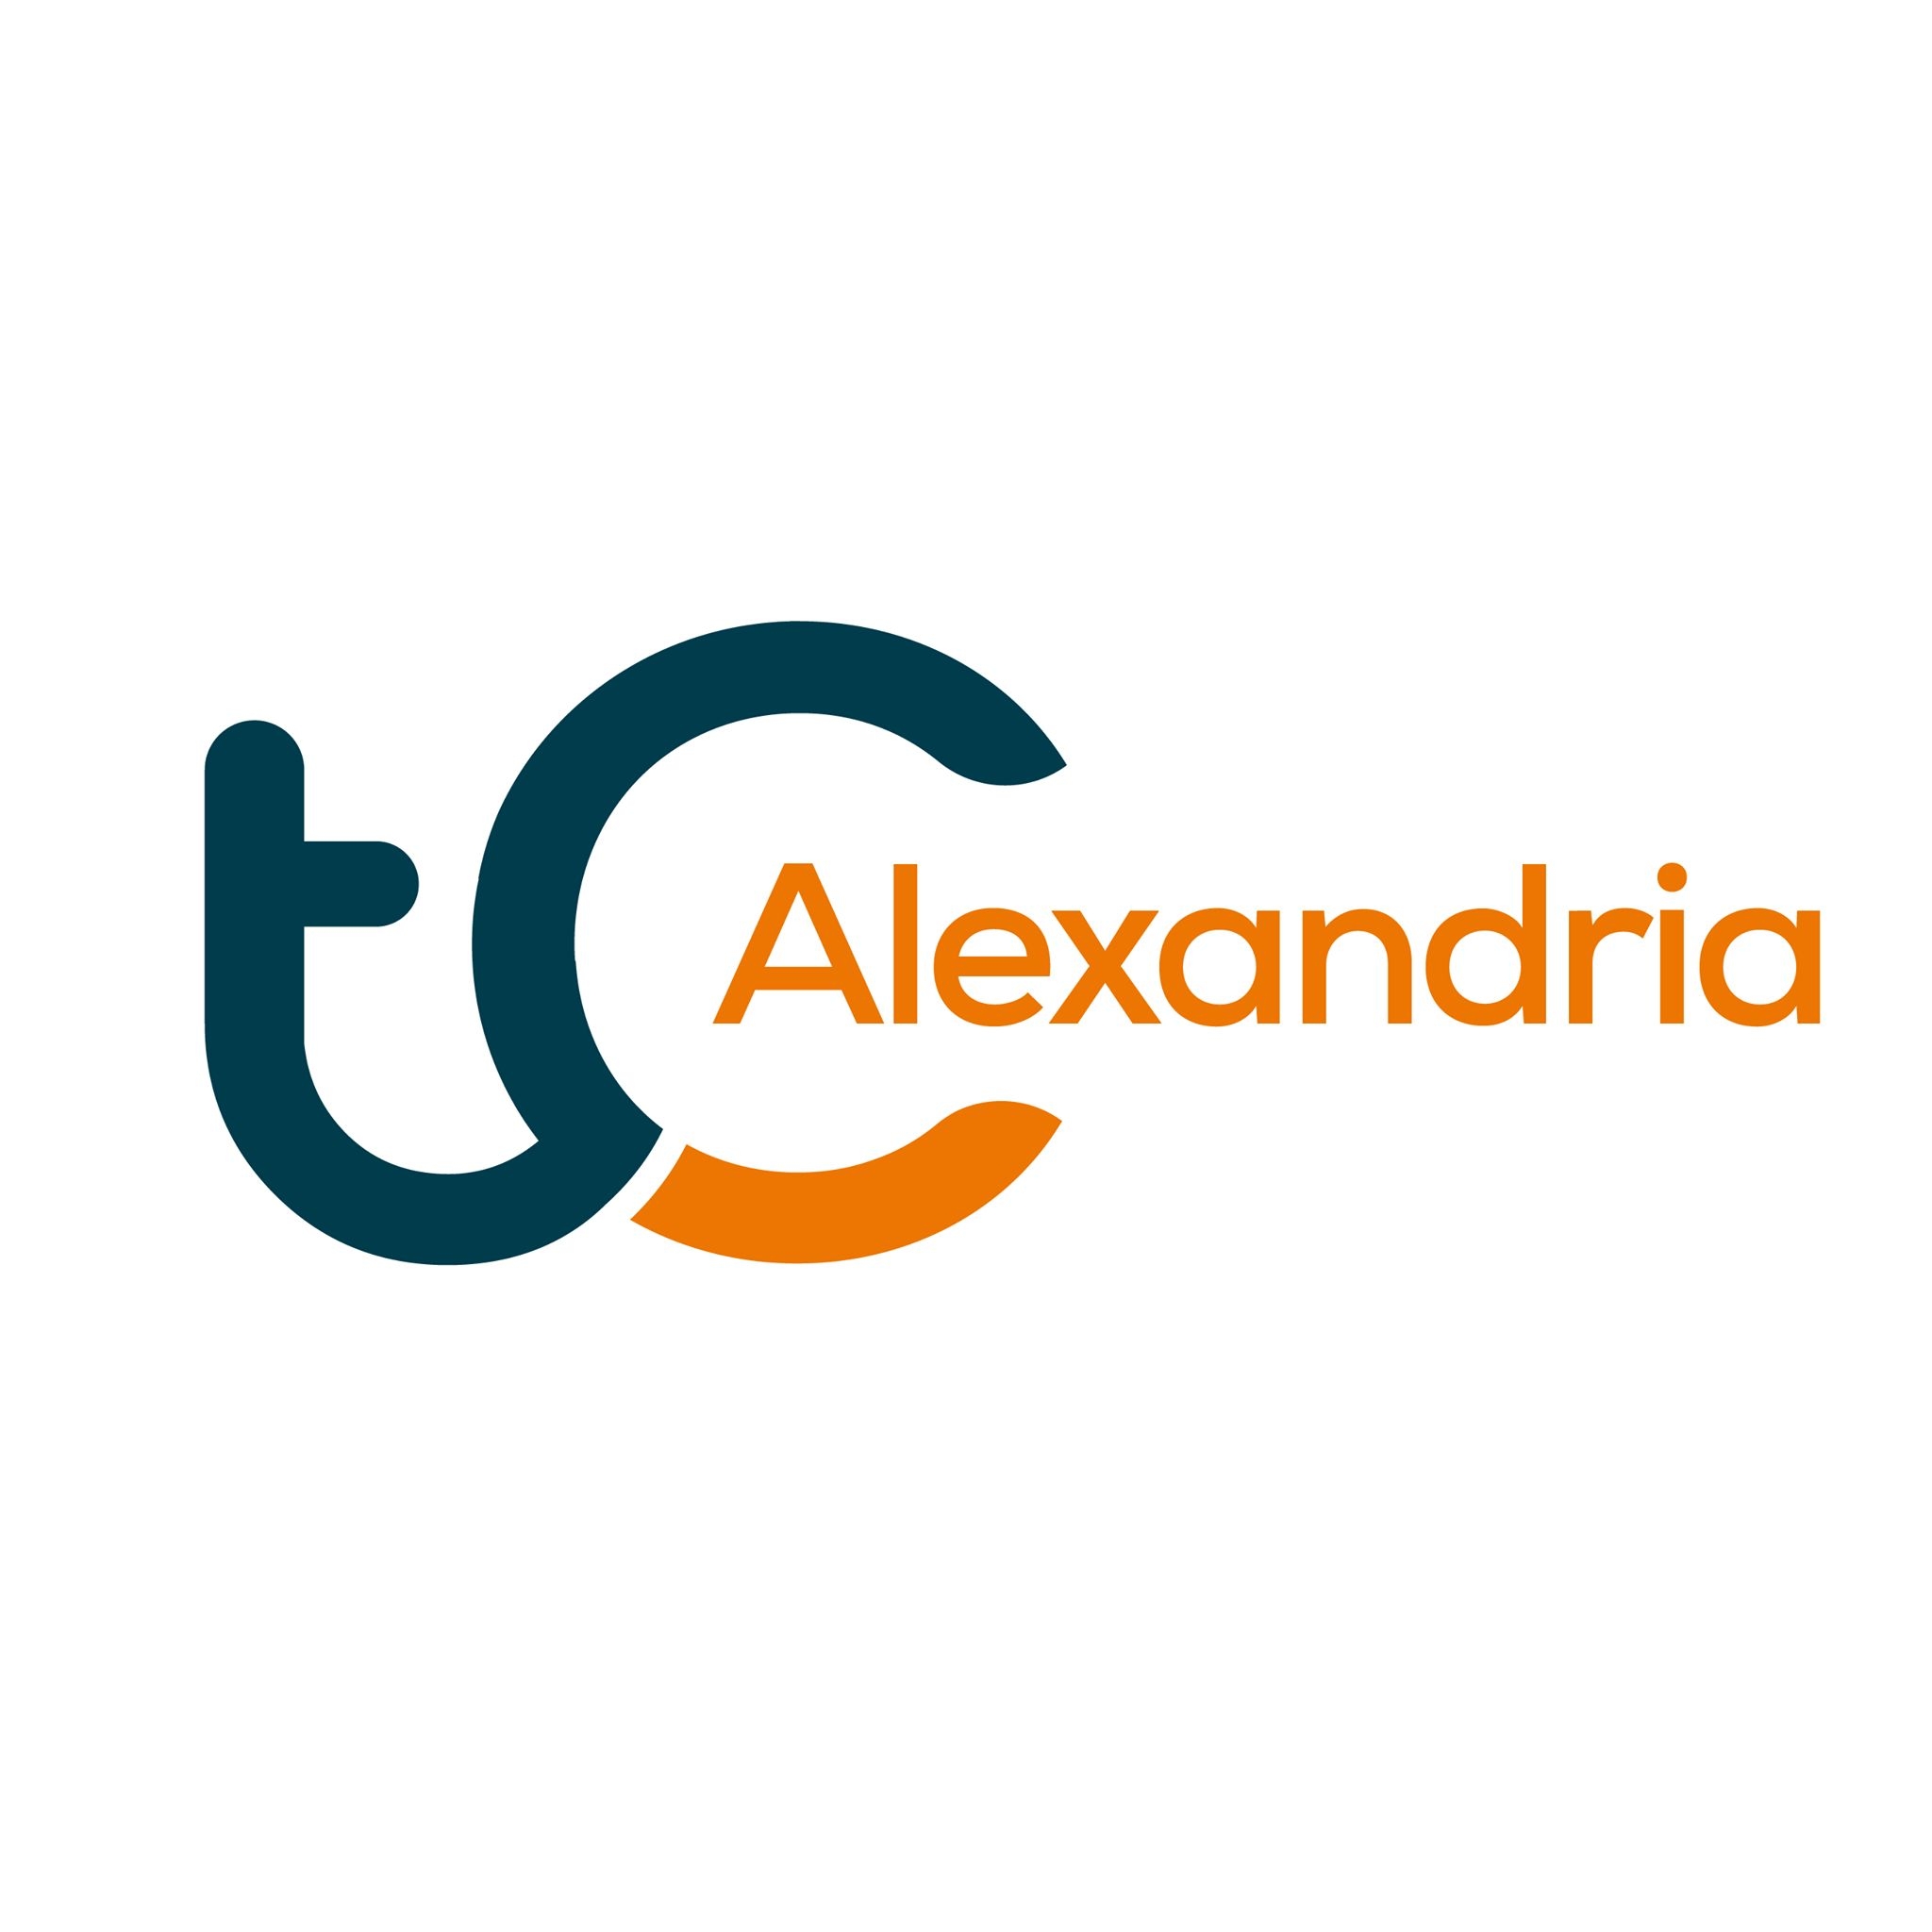 tC Alexandria